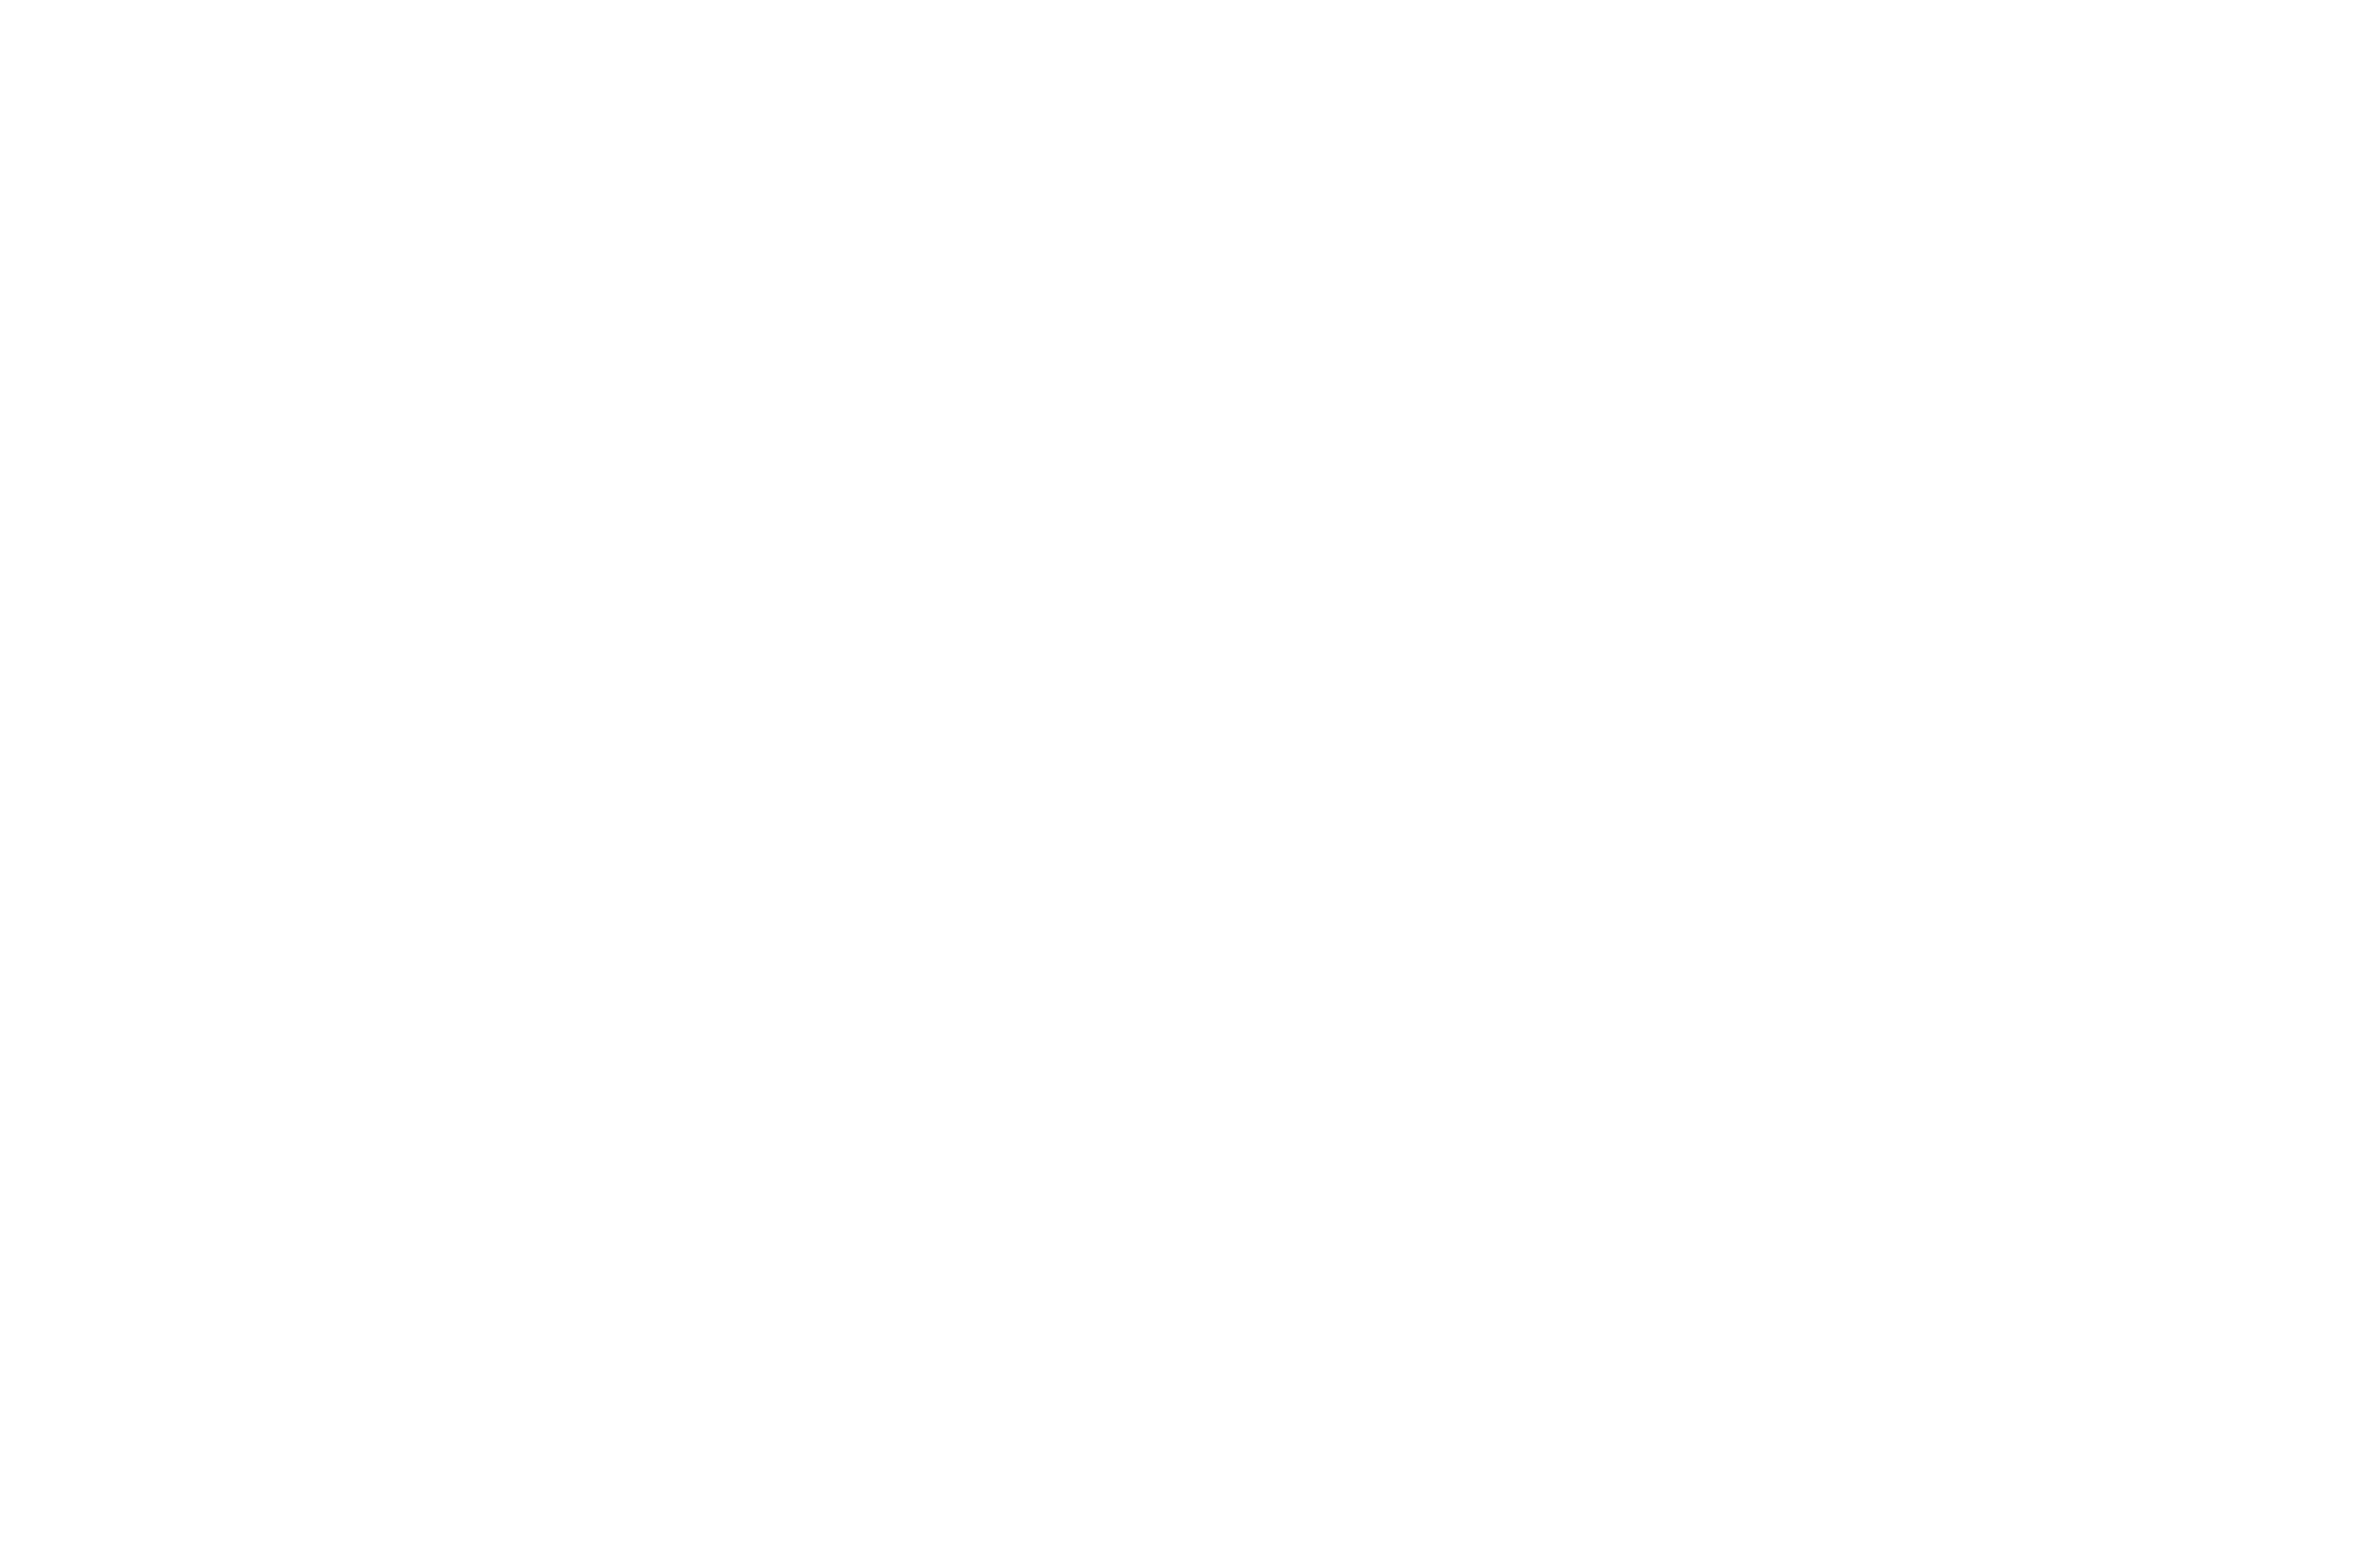 Van Der Valk | Audium | Audiovisuele producties en verhuur op broadcastmarkt Ranst